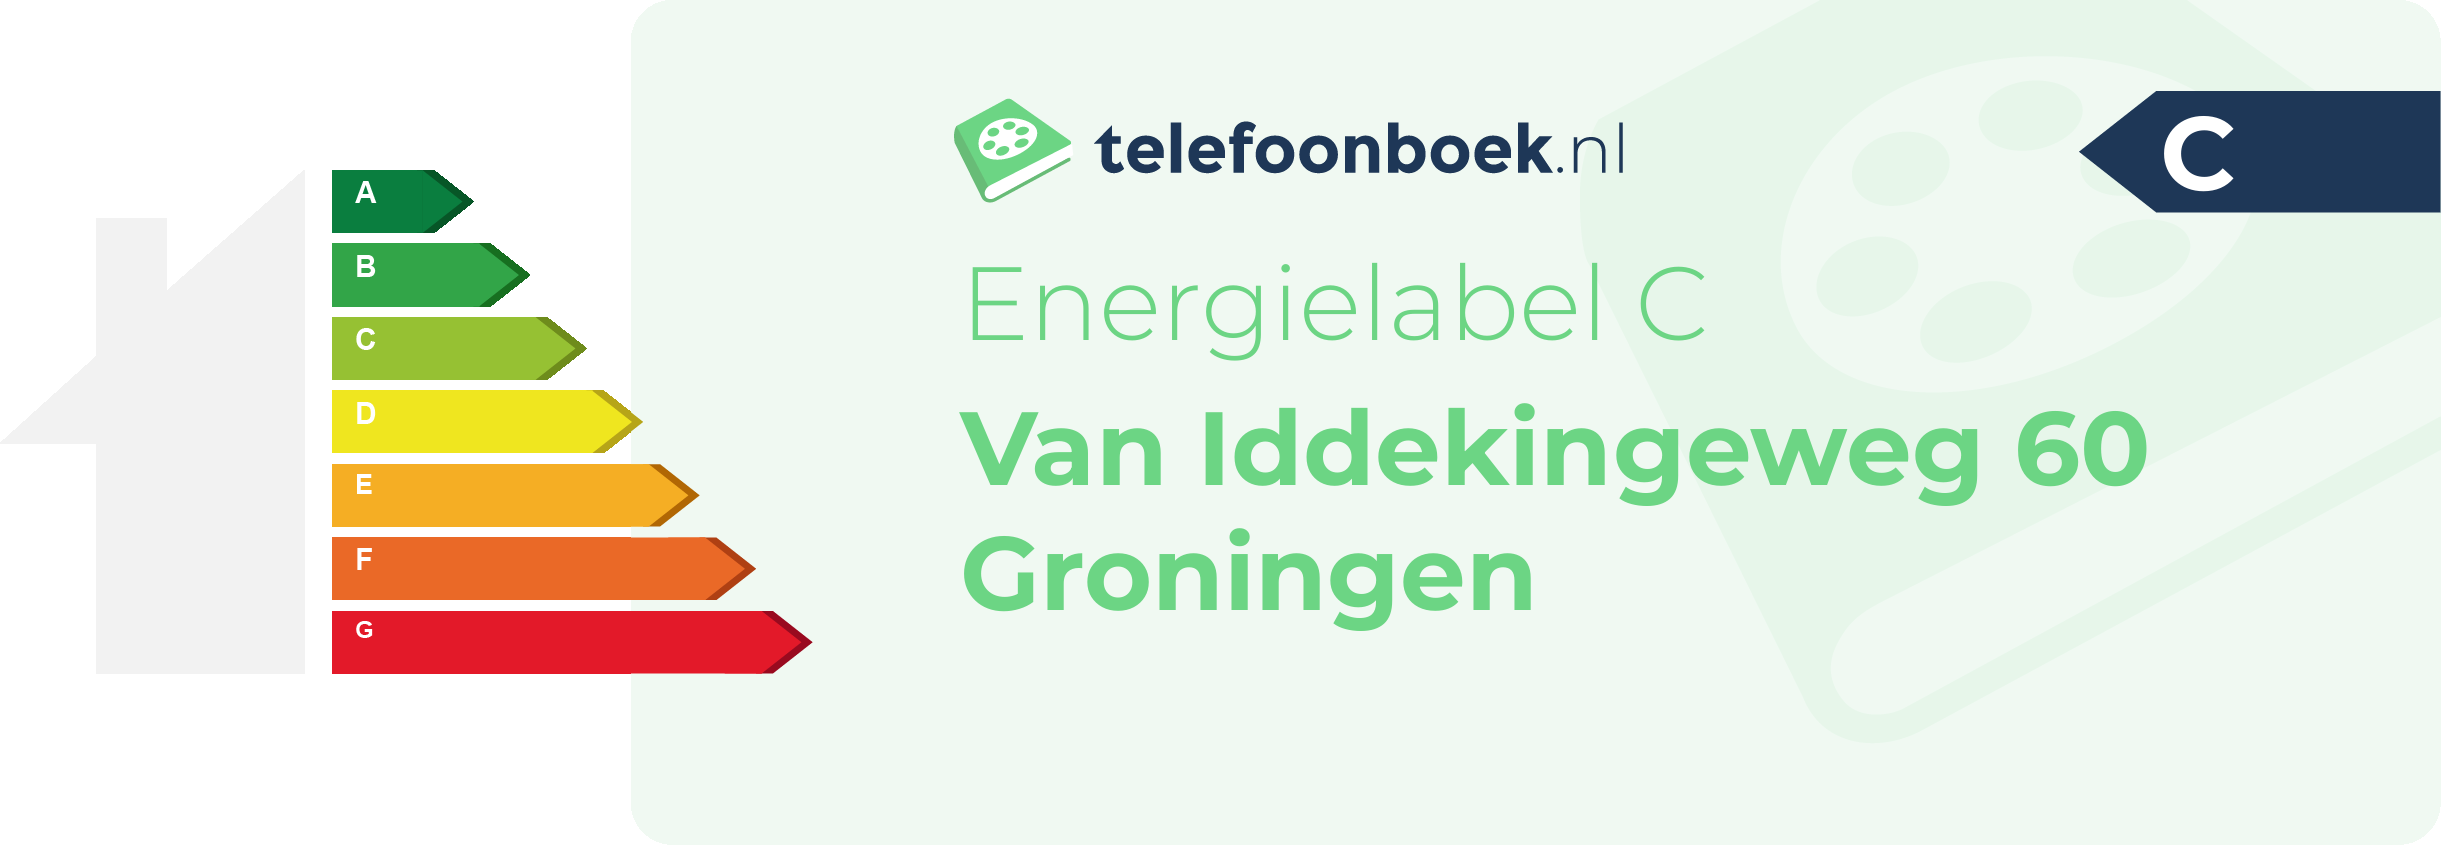 Energielabel Van Iddekingeweg 60 Groningen